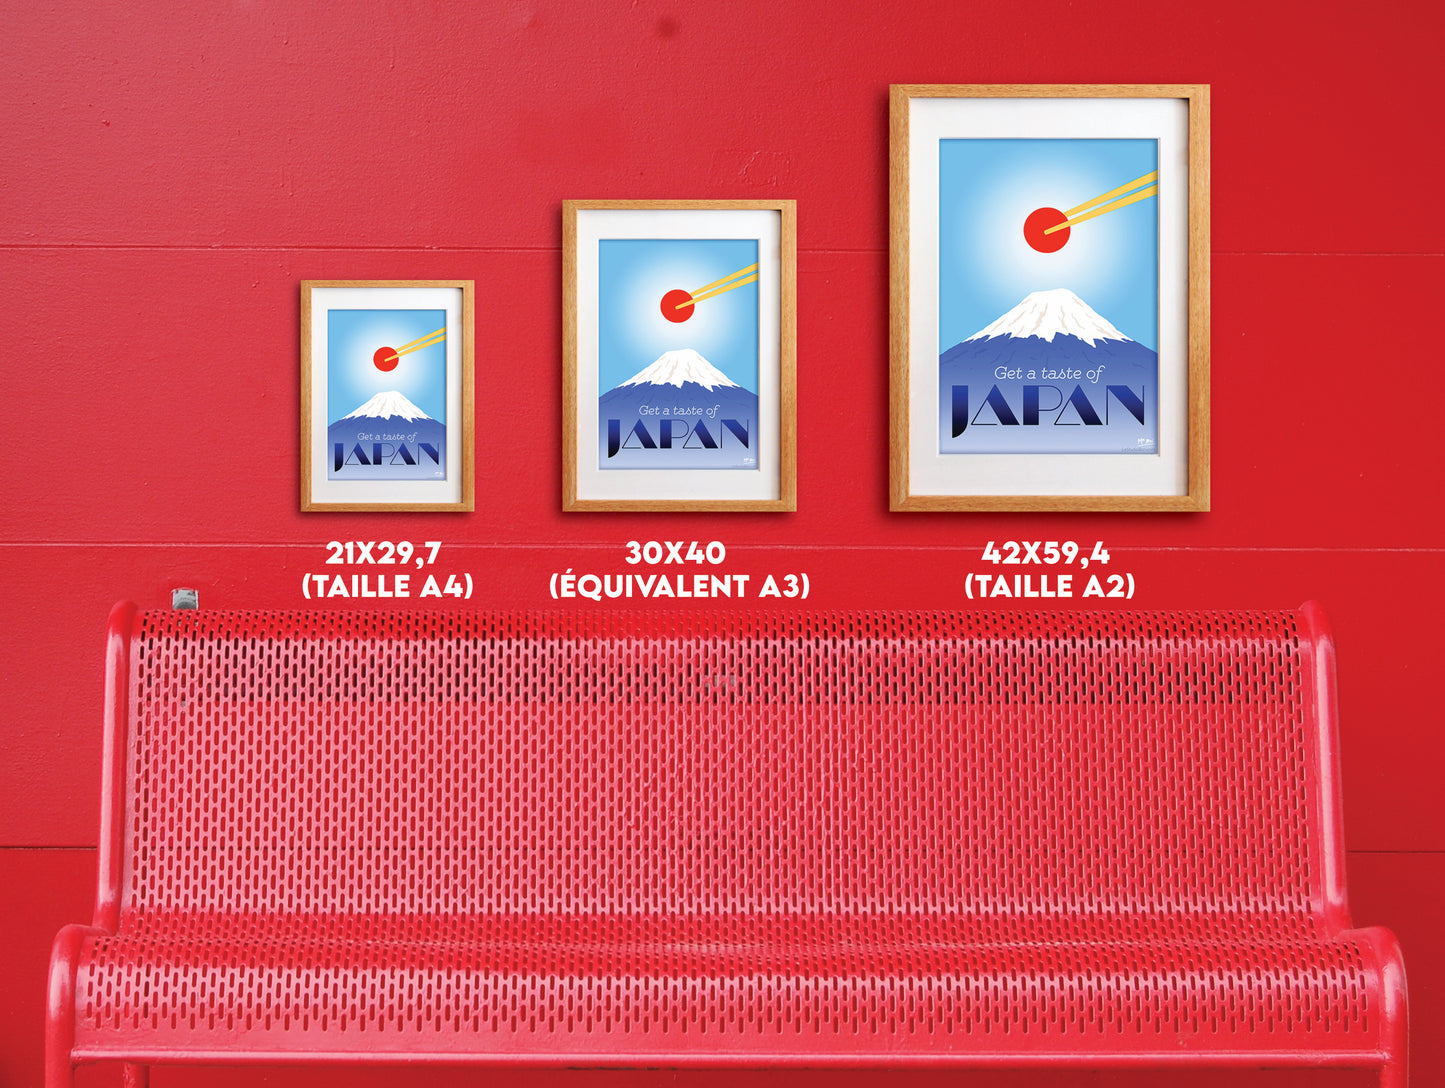 le studio bon, affiche japonaise, affiche Japon, affiche tokyo, poster japonais,  affiche en japonais, affiche murale japon, affiche voyage, affiche asakusa, decoration murale japonaise